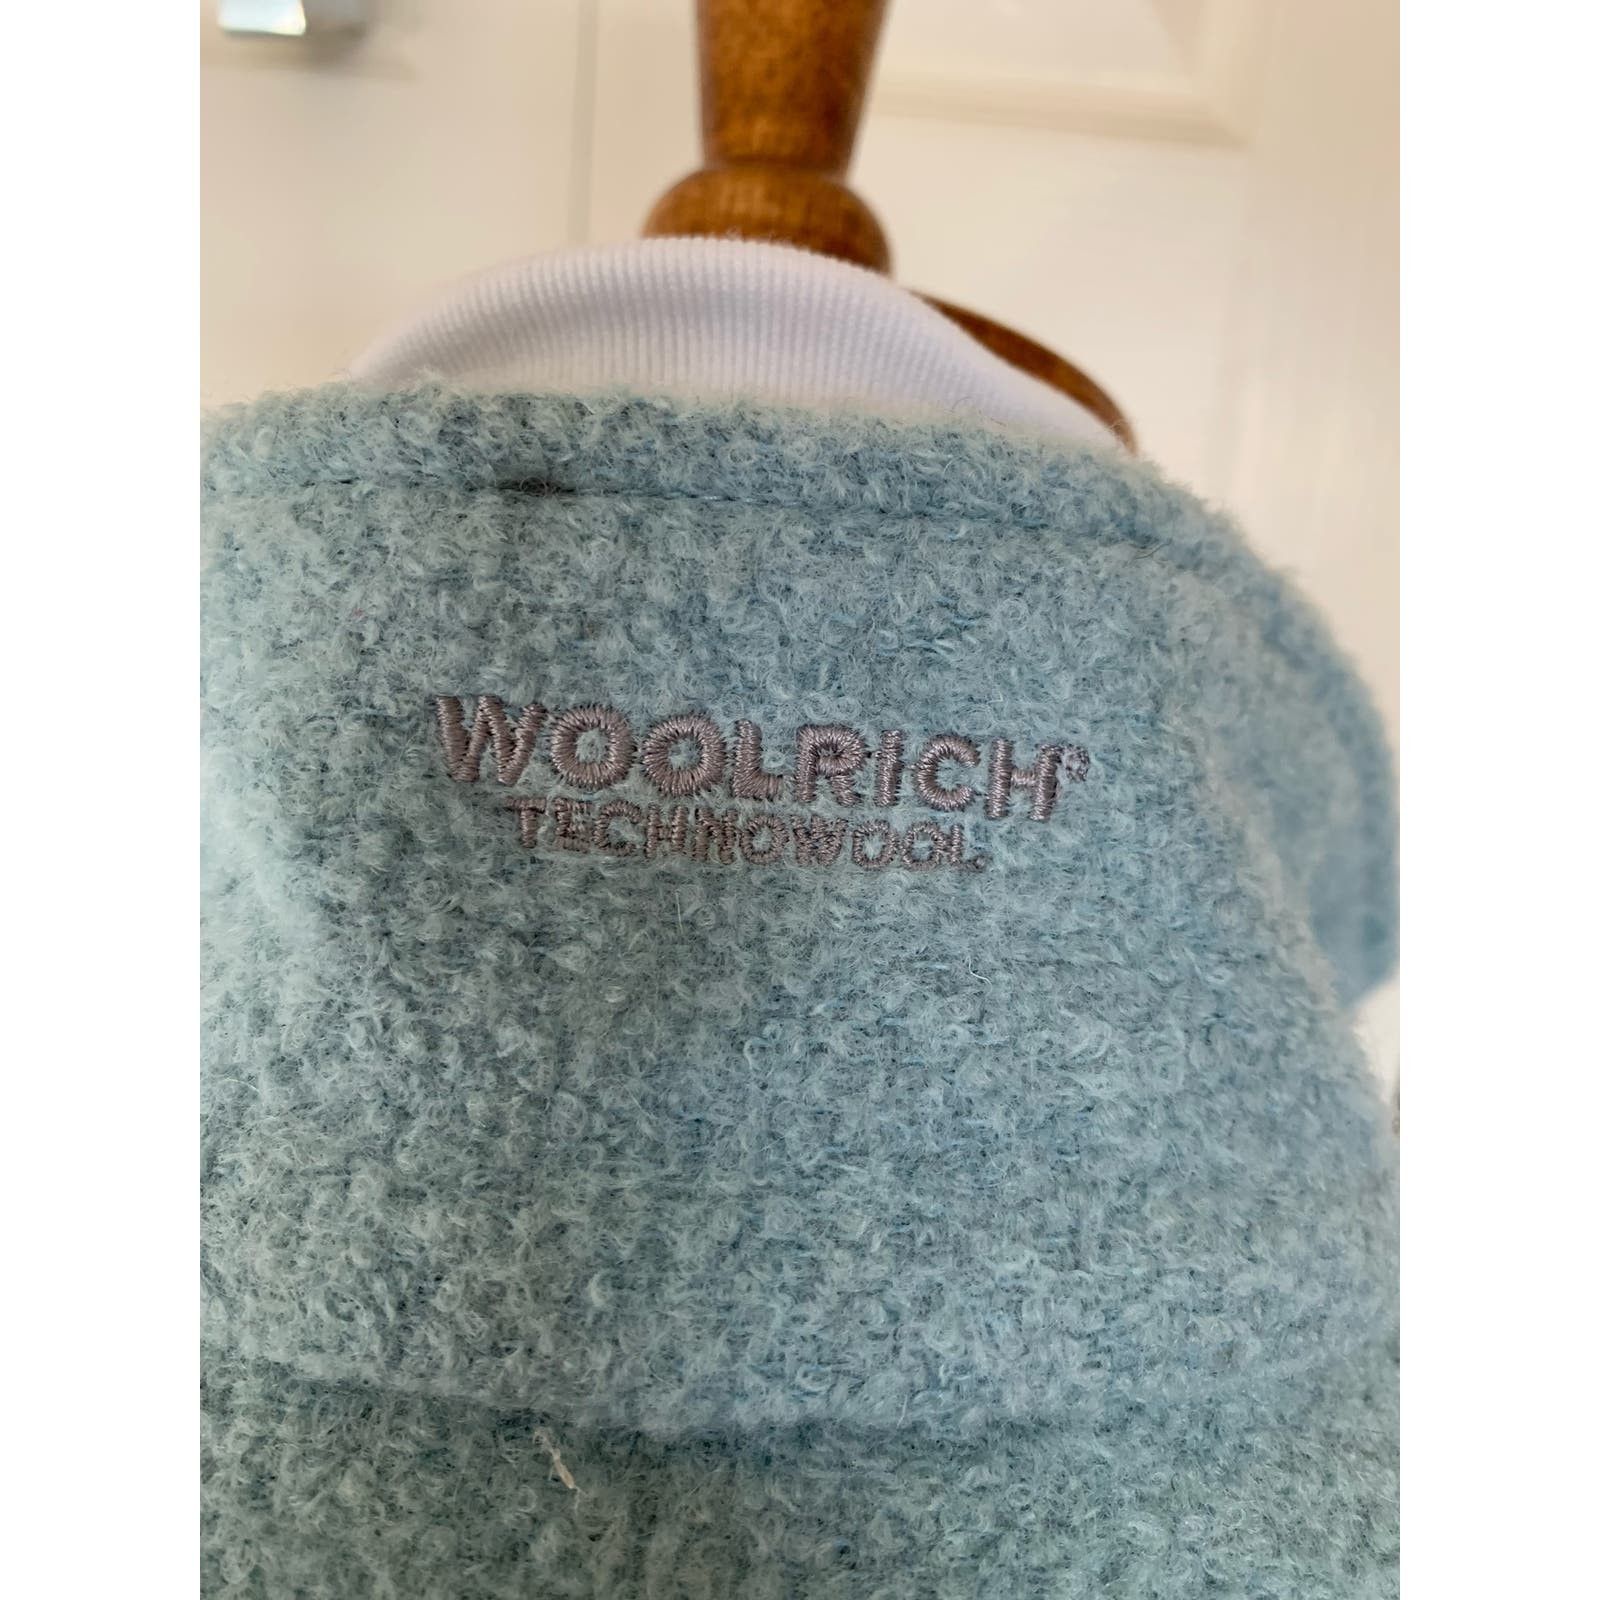 Woolrich Woolen Mills Woolrich wool vest blue womens size small euc Size S / US 4 / IT 40 - 3 Thumbnail